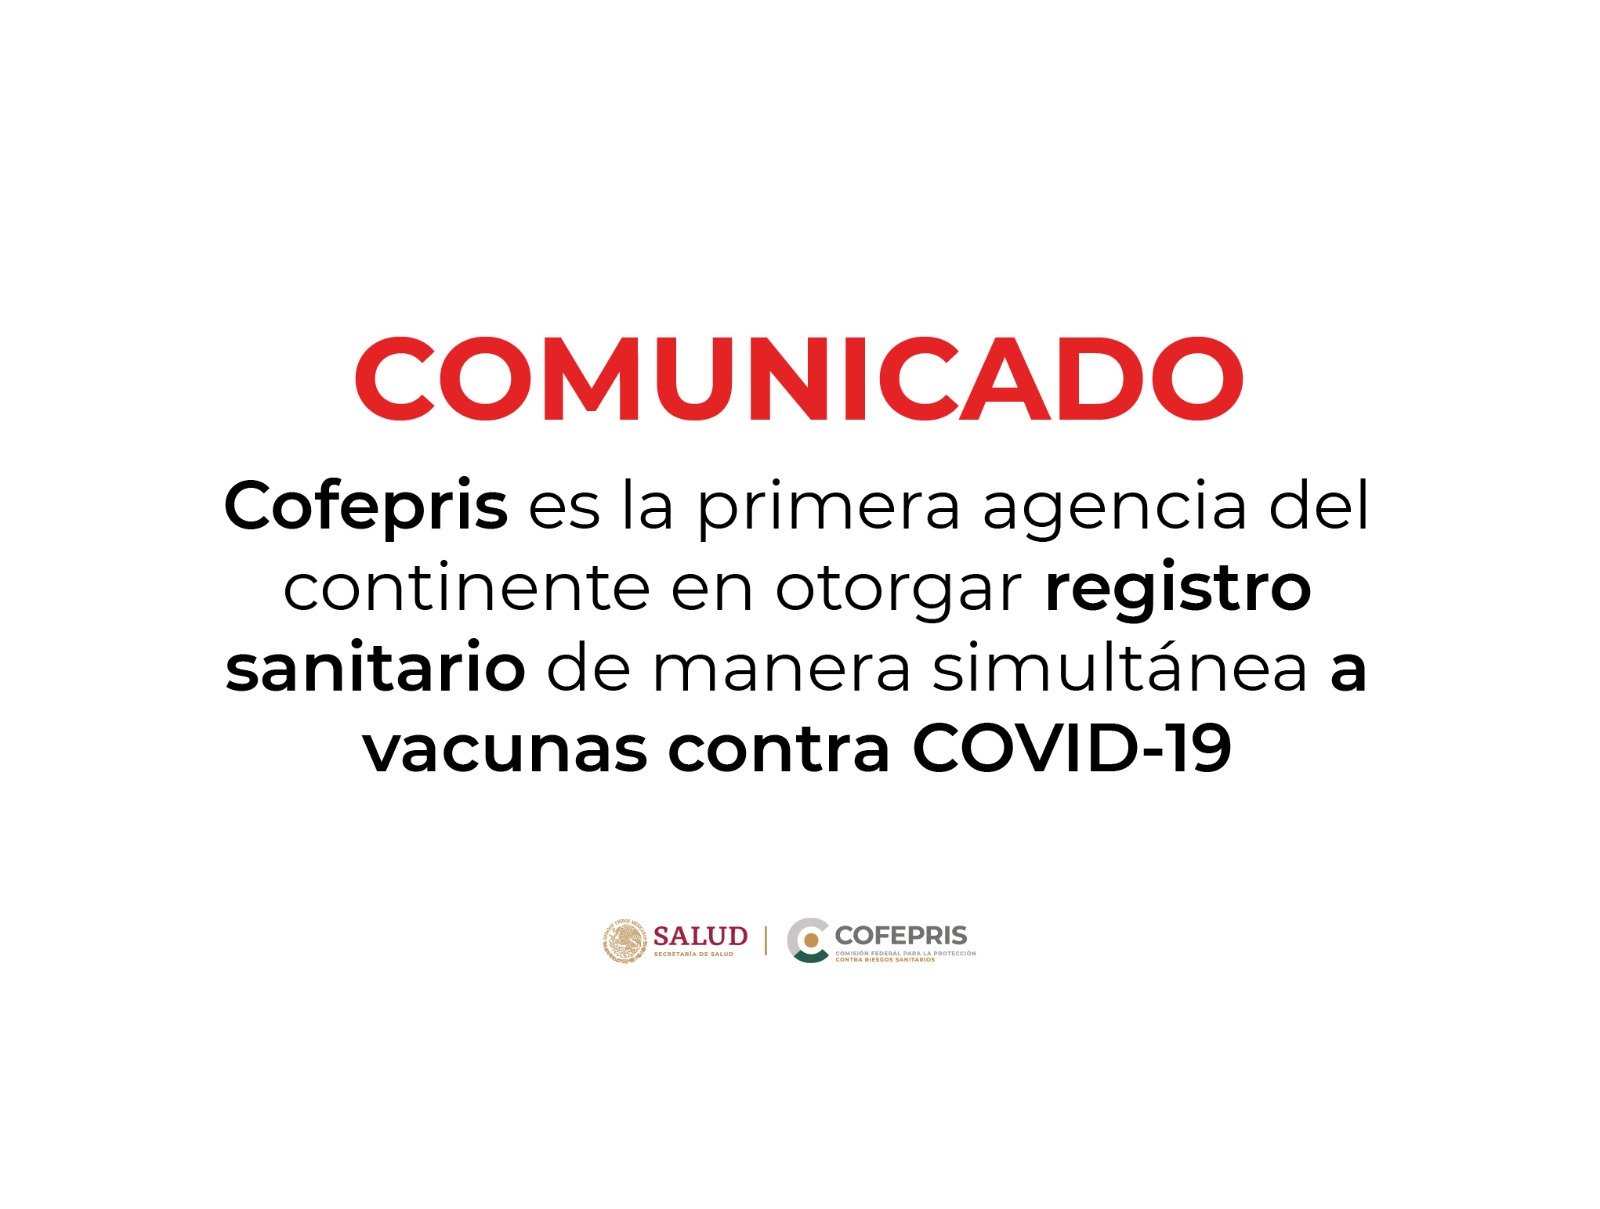 Esta autoridad sanitaria exhorta a la población a no hacer uso indiscriminado de ninguna vacuna contra COVID-19